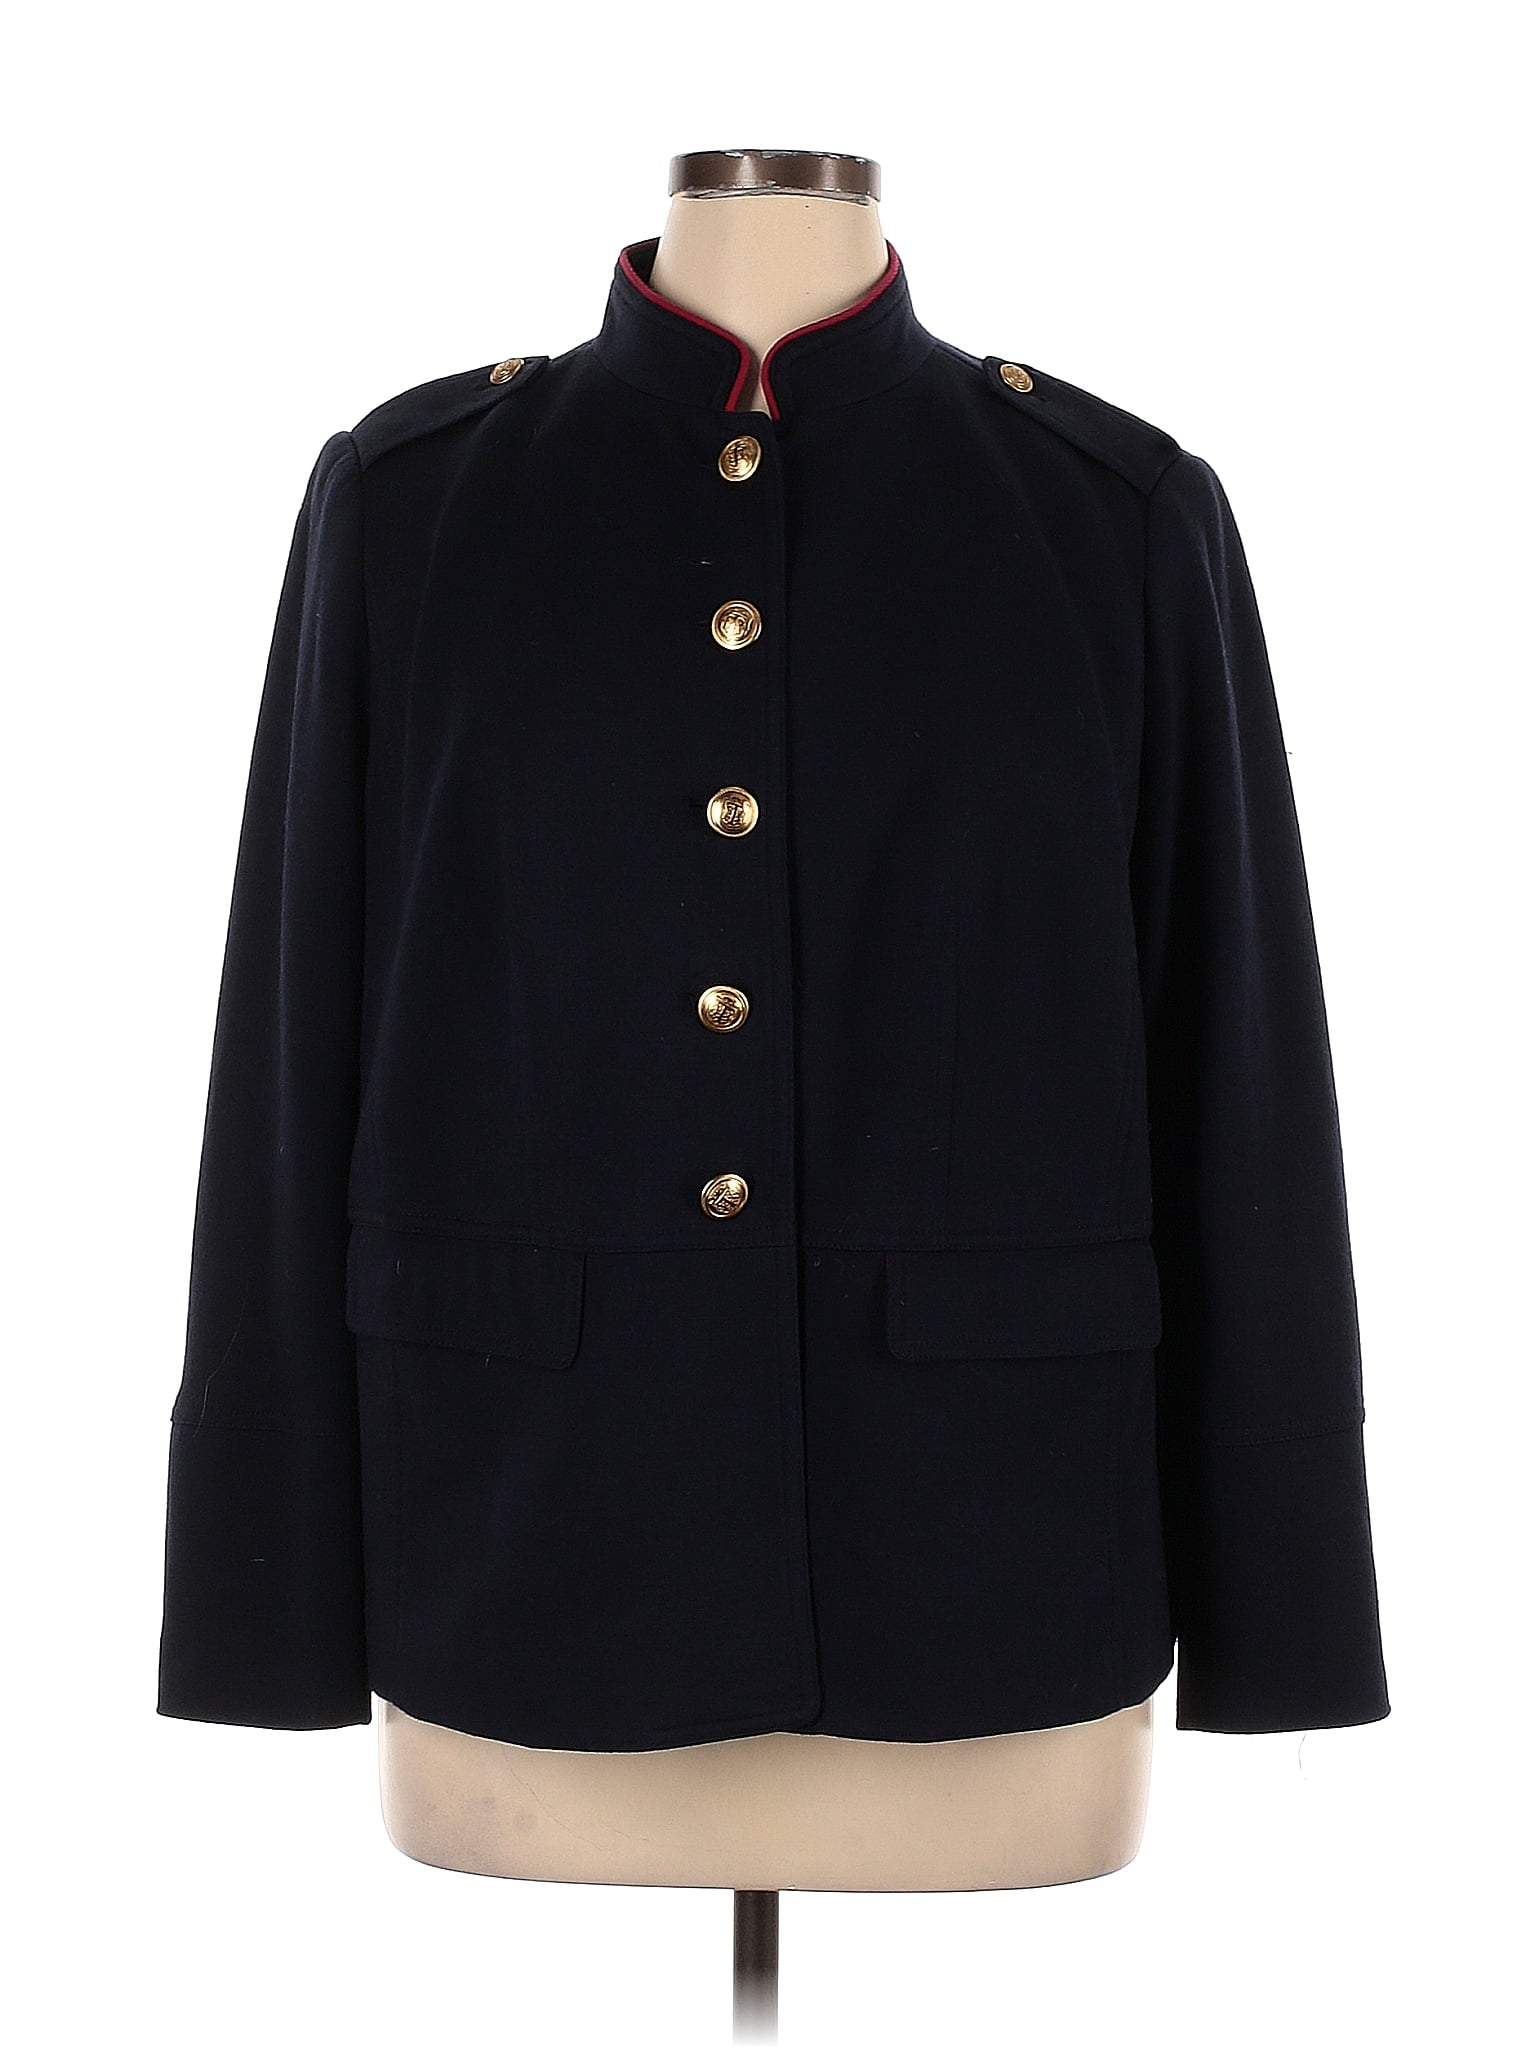 Talbots Solid Black Blue Jacket Size 14 - 75% off | thredUP